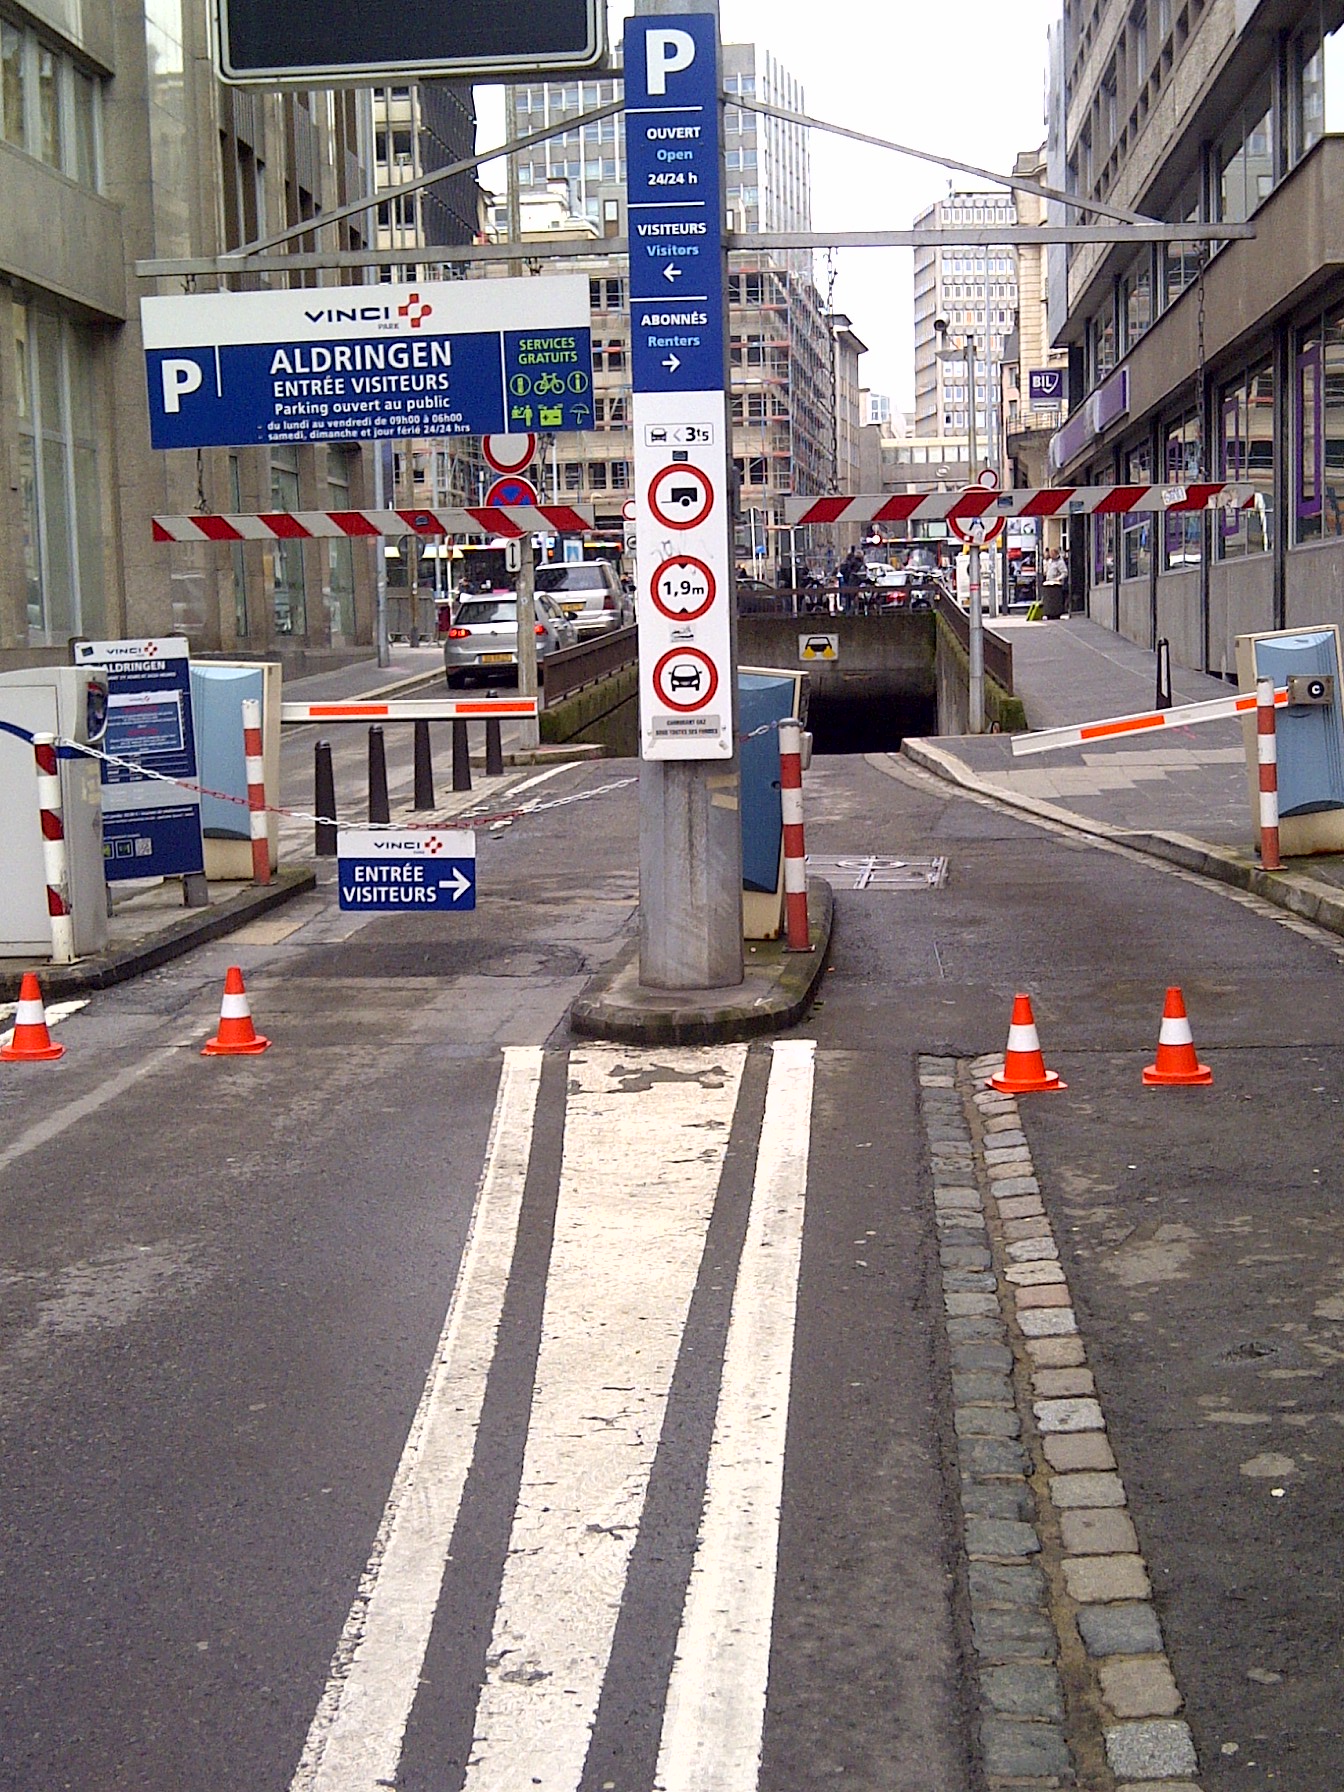 File:Luxembourg, Parking Aldringen (5).jpg - Wikimedia Commons